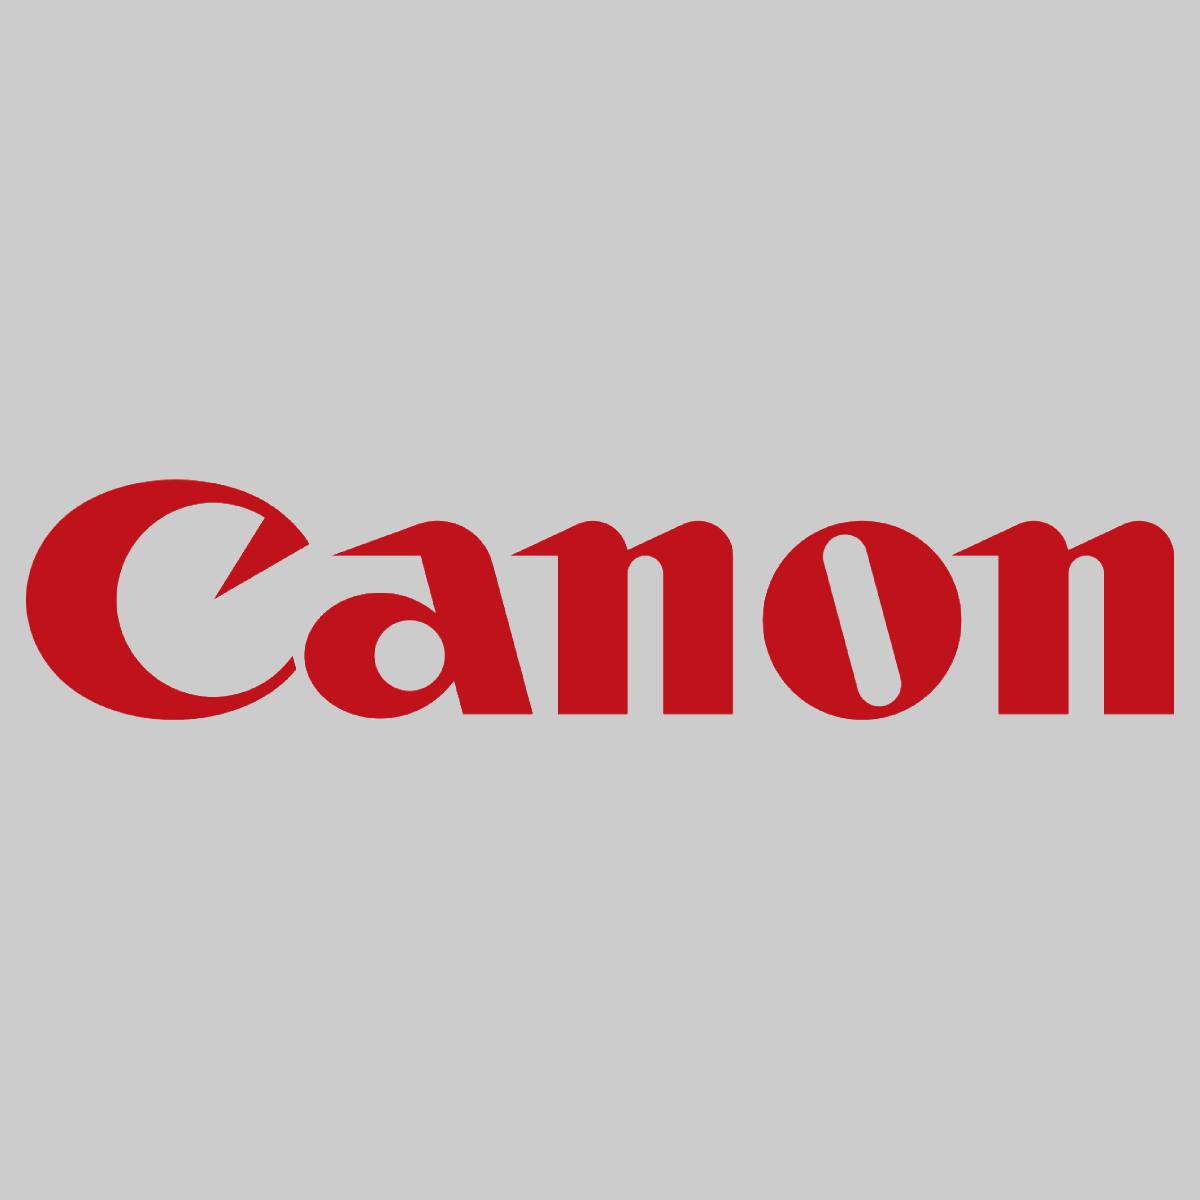 "Original Canon Bootle Waste Toner FM2-2058-010 WT-402 für ImagePress C6000